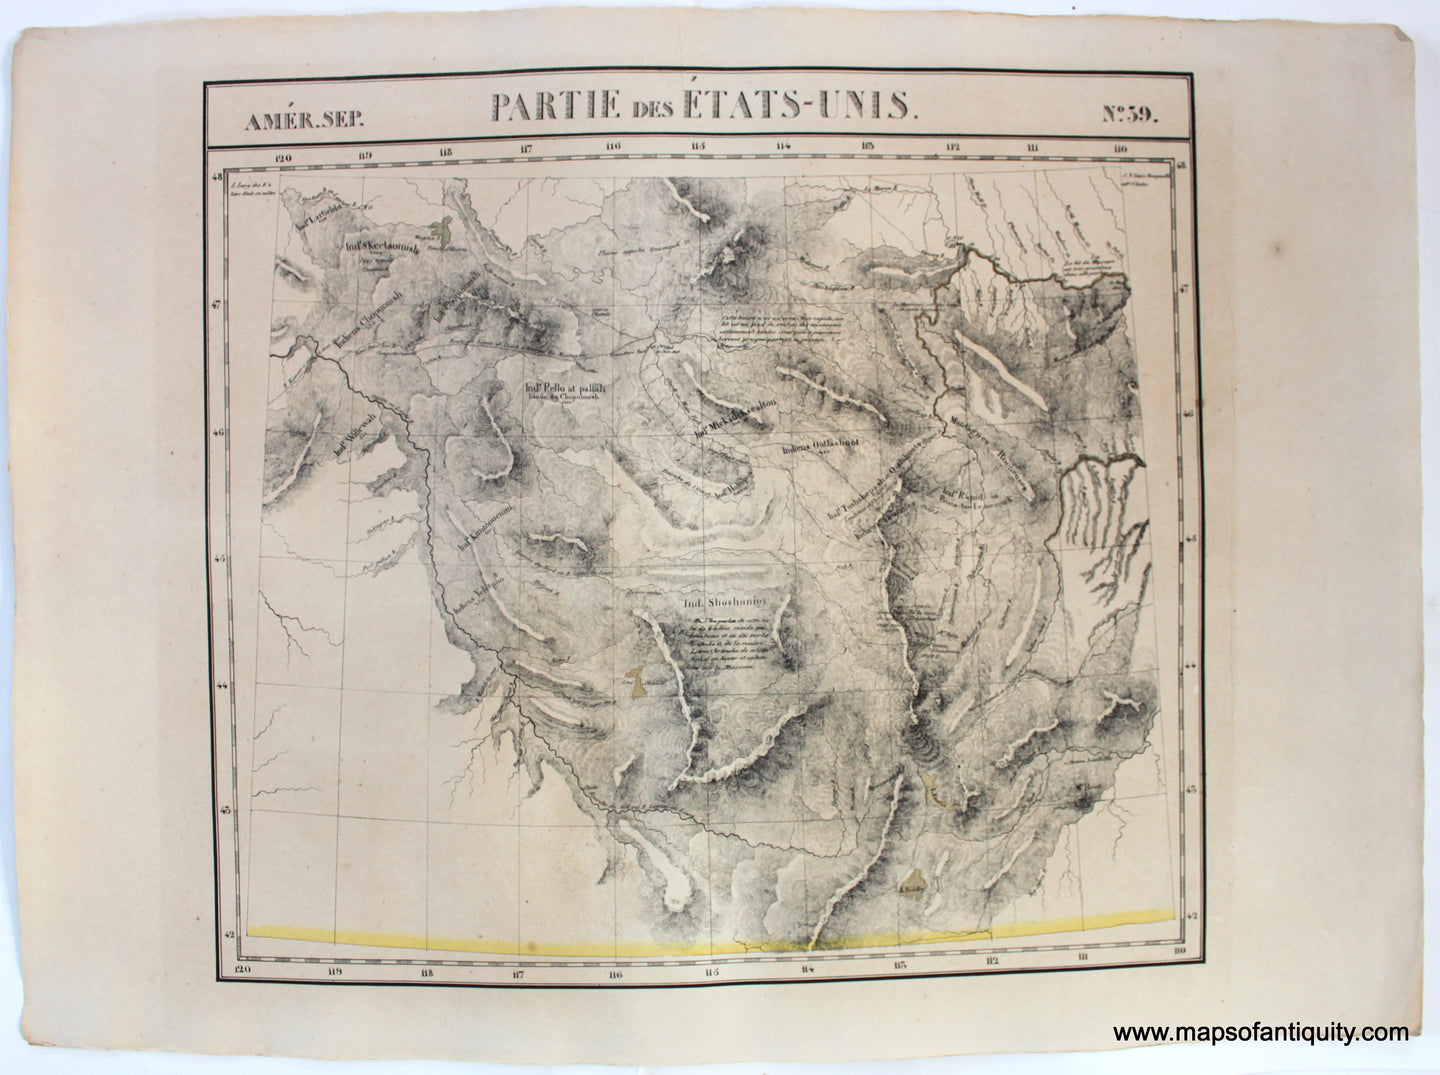 Antique-Map-Amer.-Sep.-No.-39-Partie-des-Etats-Unis